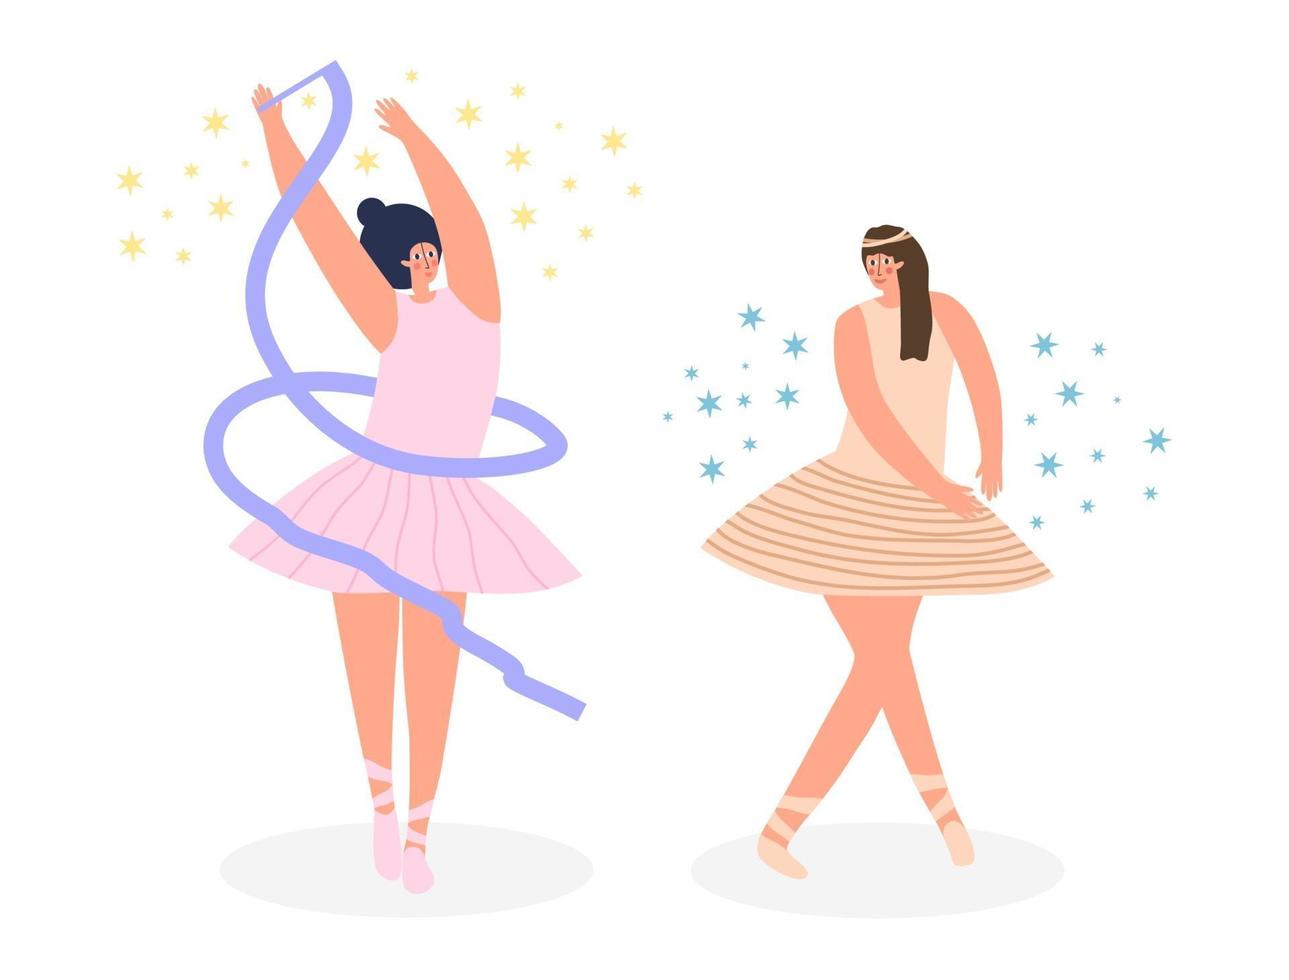 conjunto de bailarinas con tutú y zapatos de punta, bailando y posando. ilustración vectorial plana moderna. vector